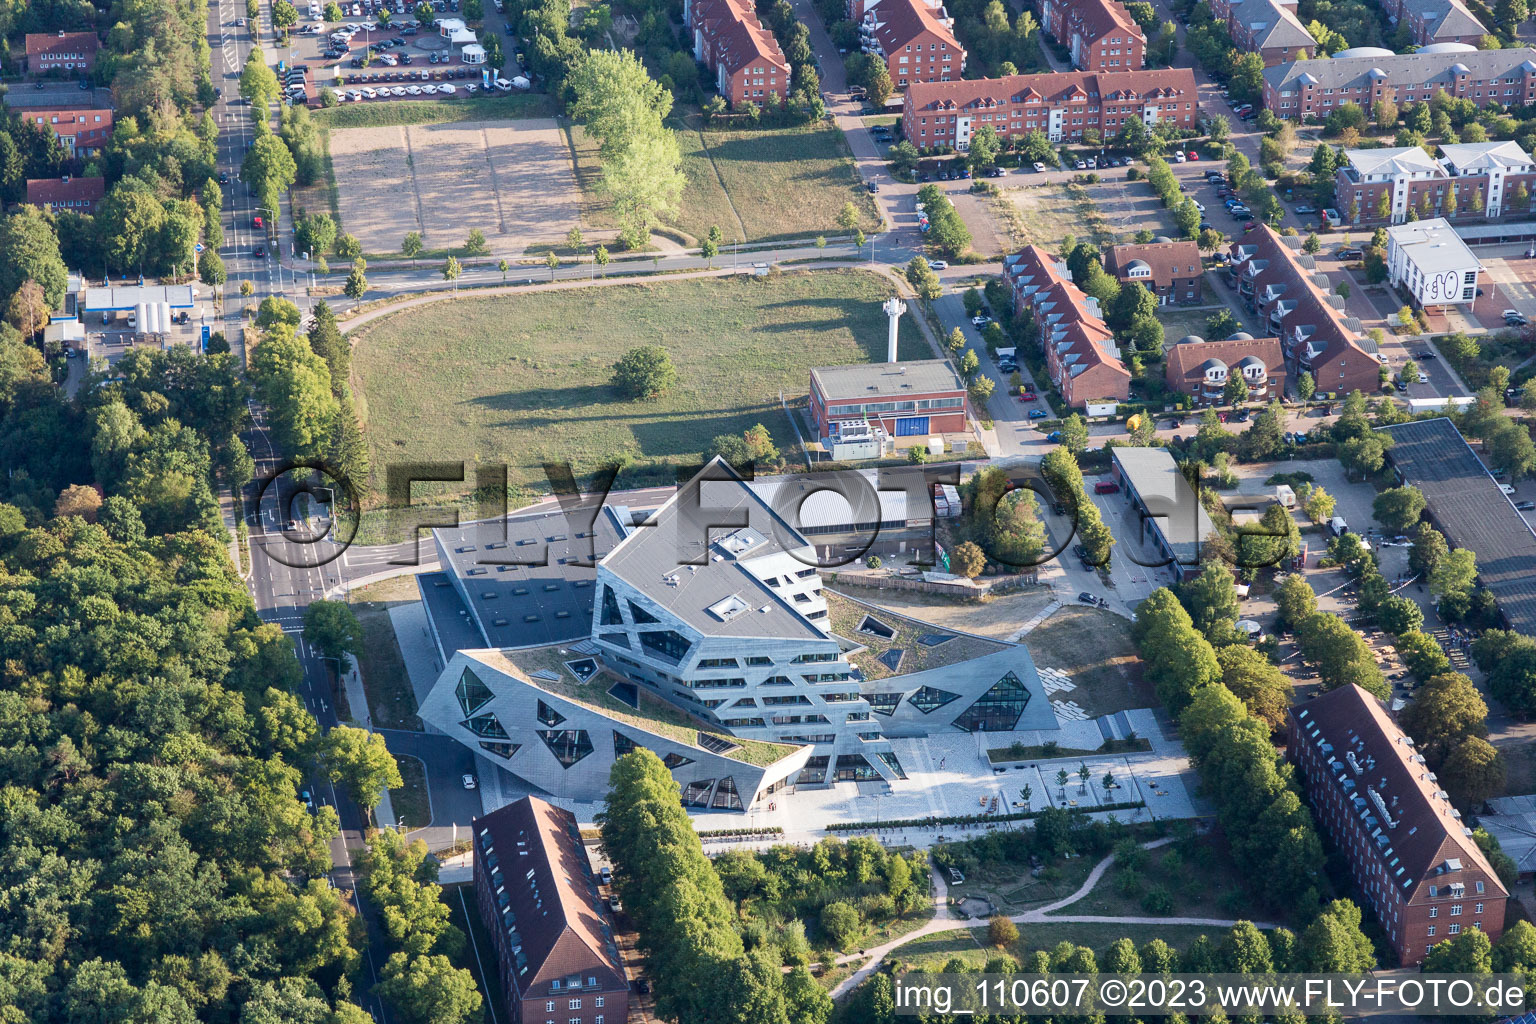 Luftbild von Campus- Universitäts- Bereich Zentralgebäude Leuphana Universität Lüneburg vom Architekt Libeskind in Lüneburg im Bundesland Niedersachsen, Deutschland